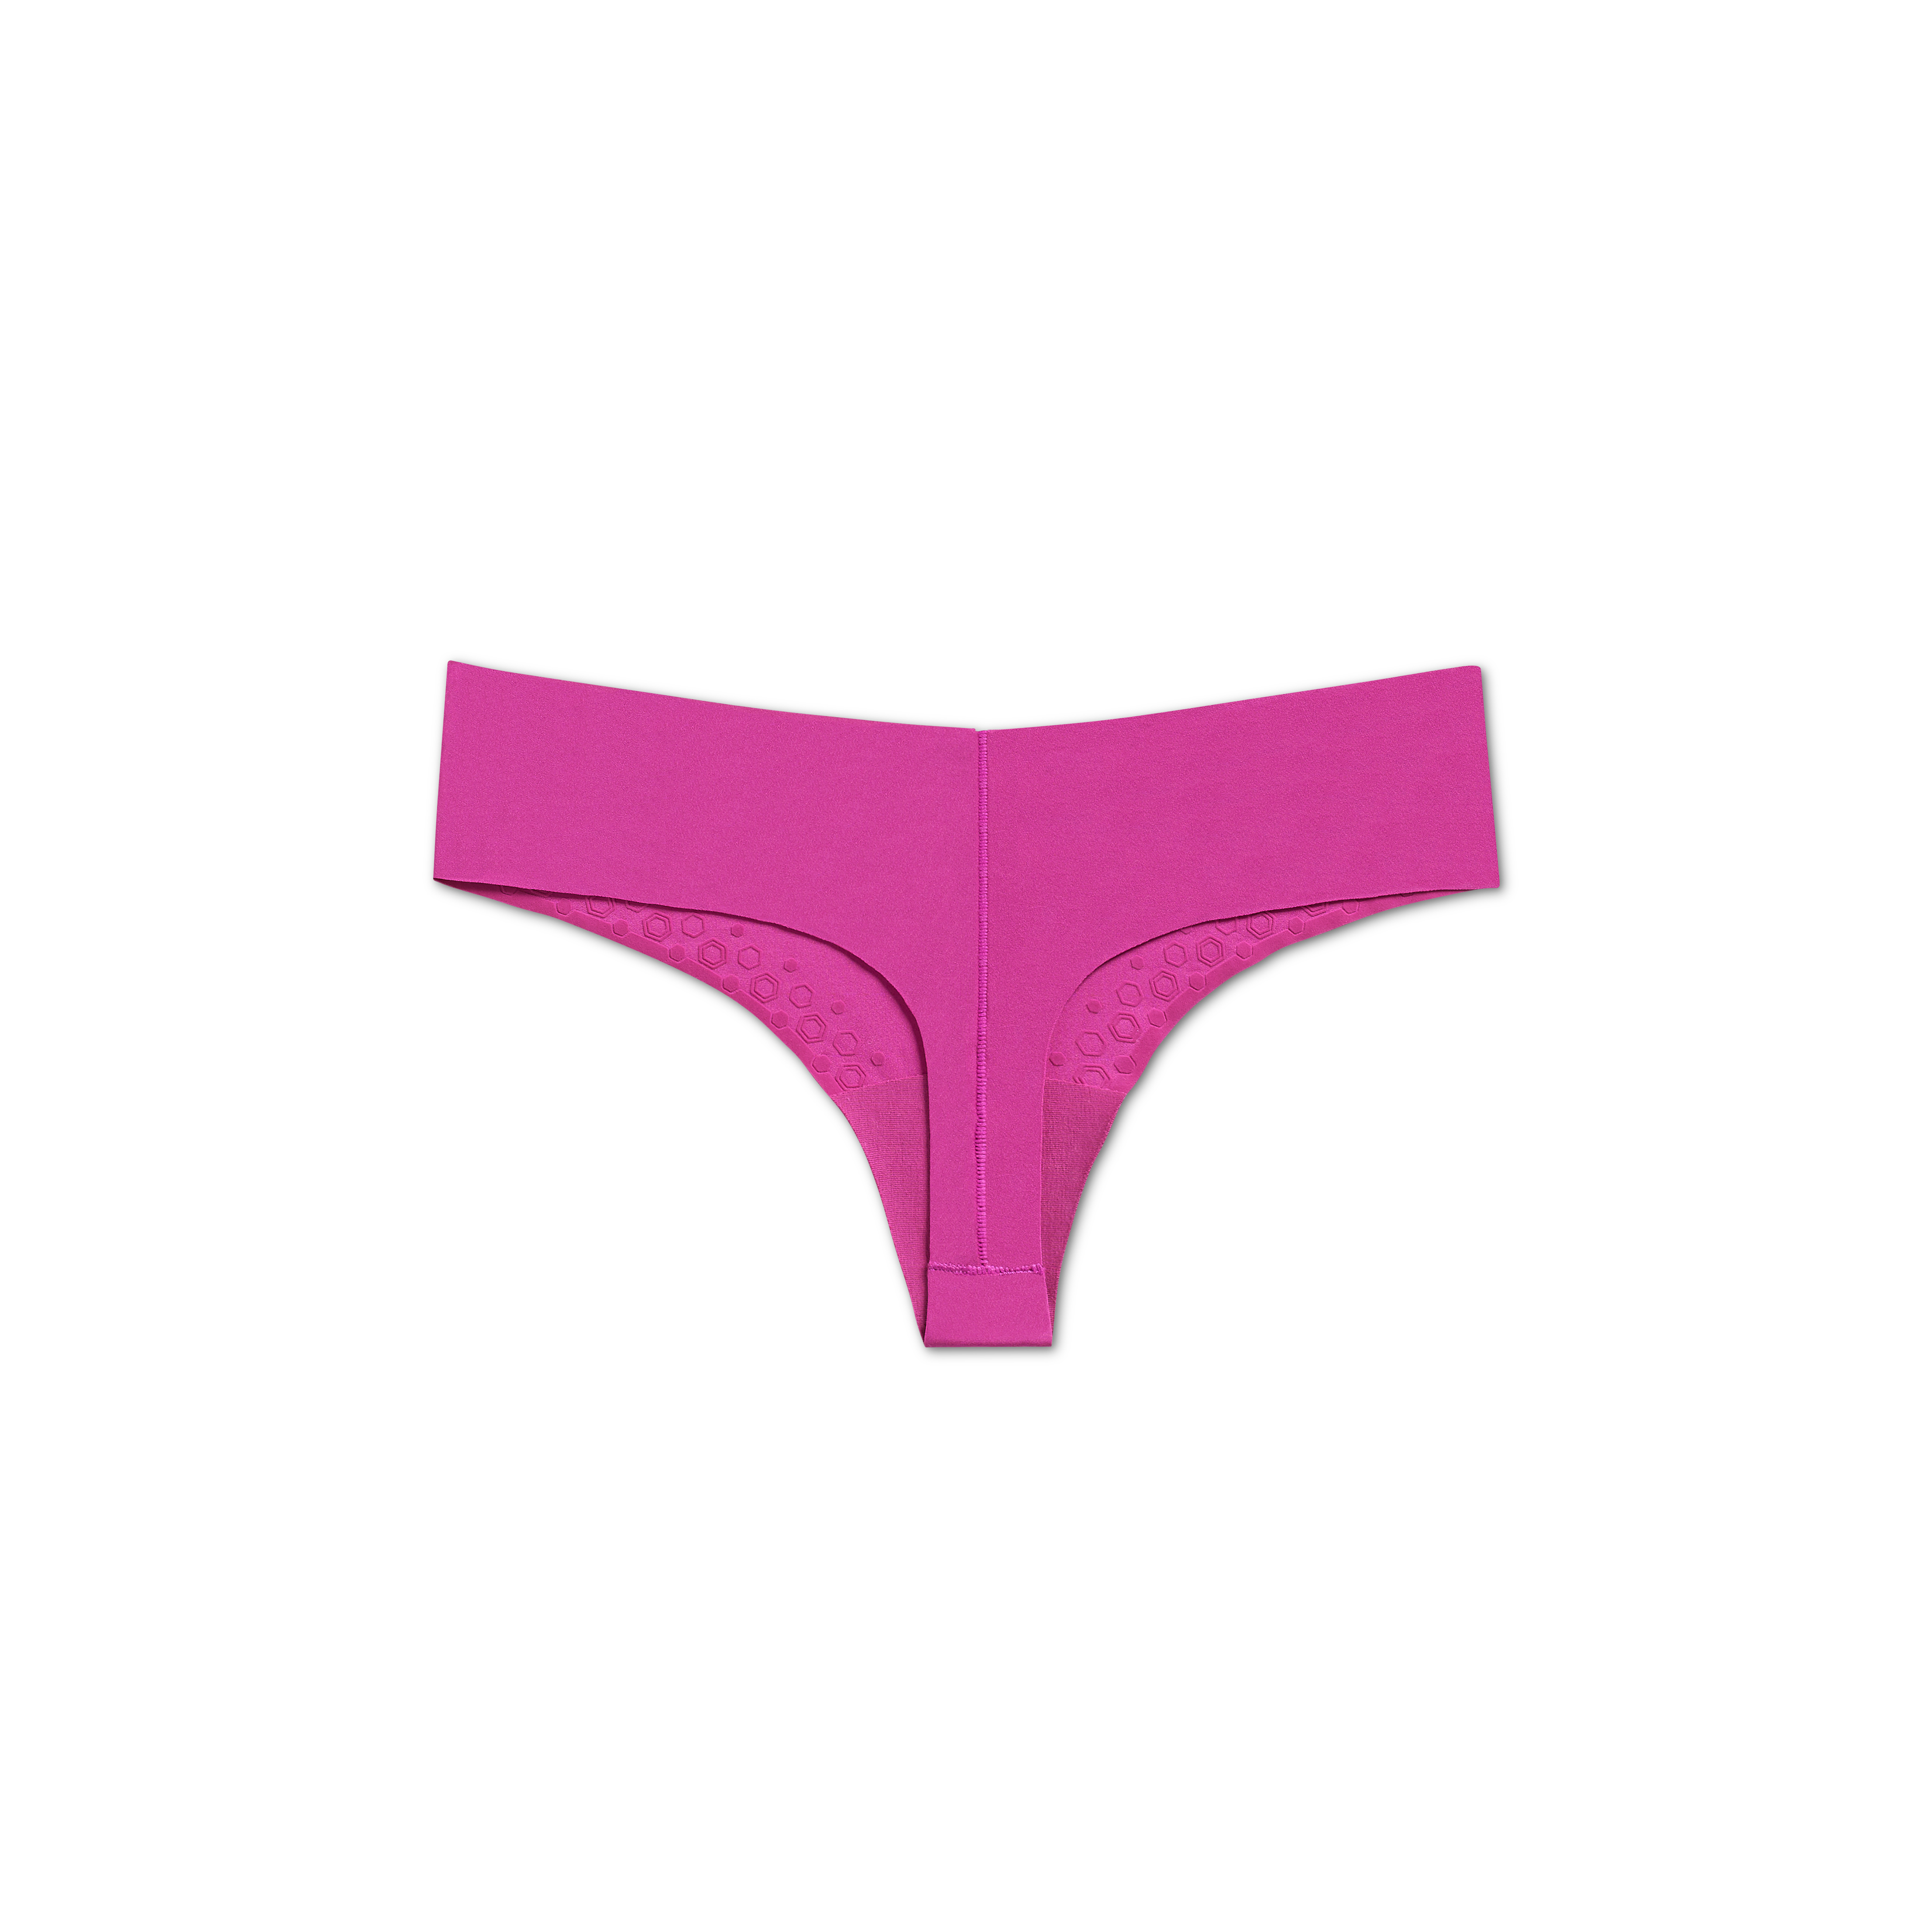 VBARHMQRT No Show Underwear for Women Thong Womens Hip Lift Body